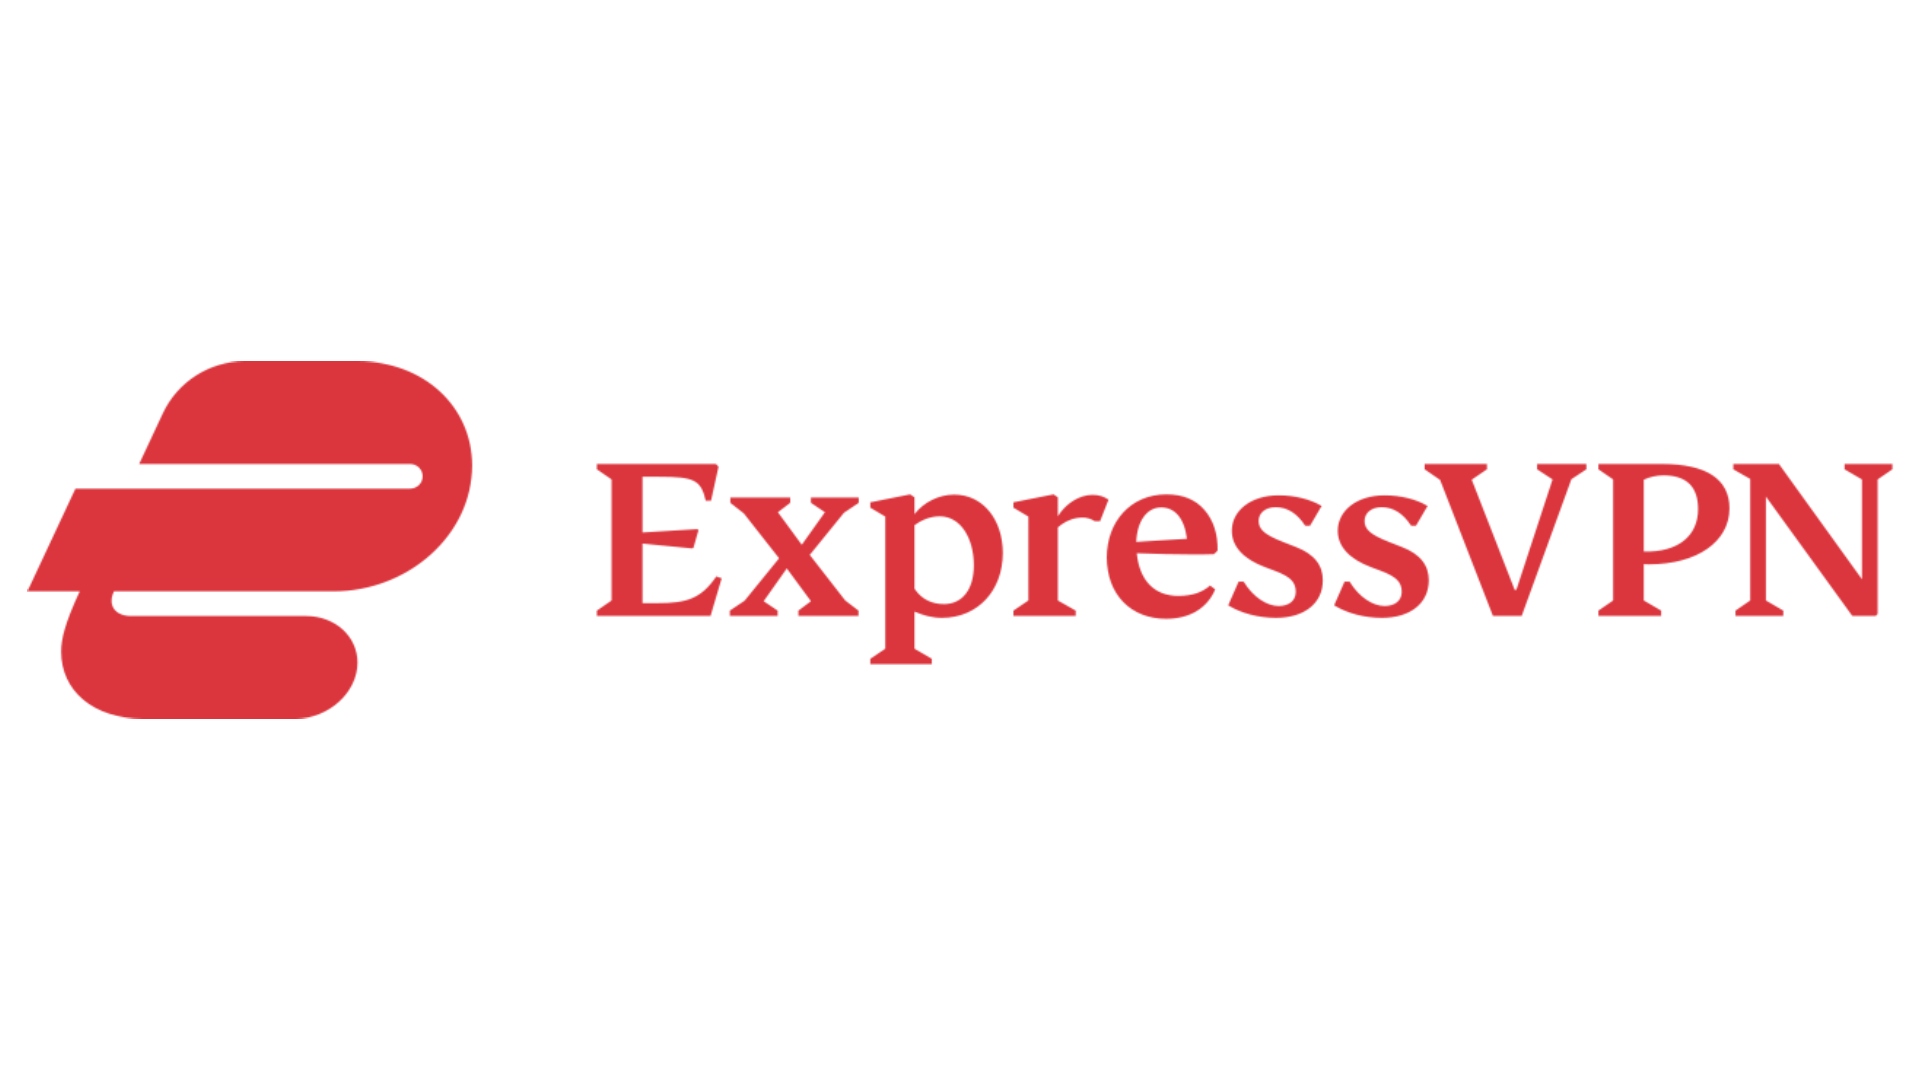 VPN browser extensions: image shows the logo for ExpressVPN, the best Safari VPN.